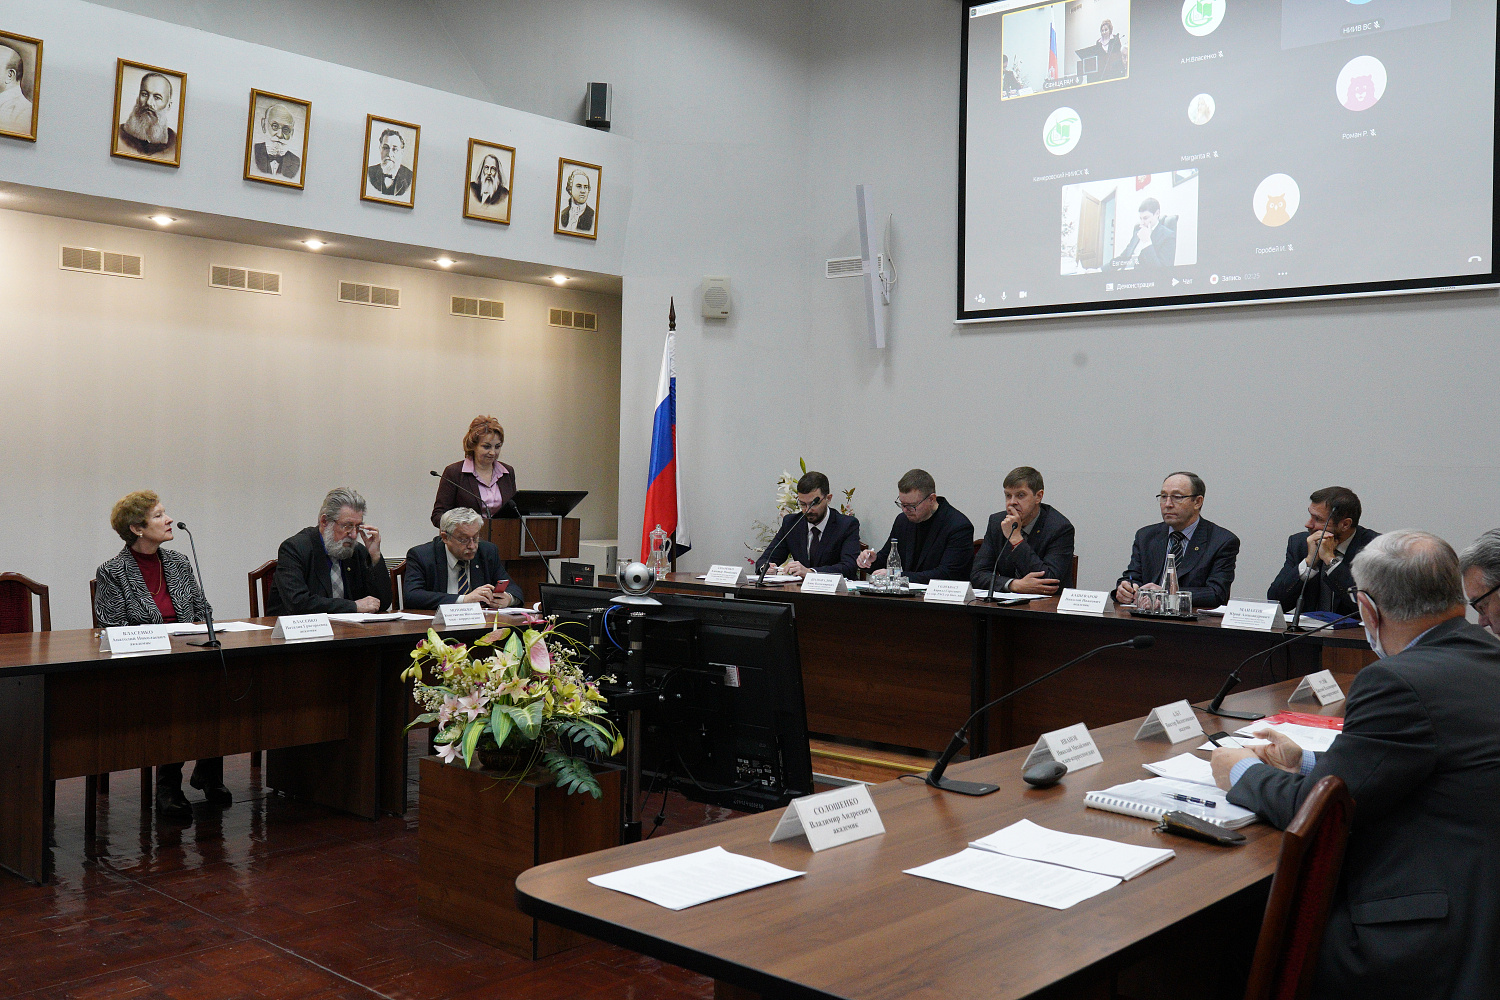 Завершила годовую работу отчетная сессия научных подразделений СФНЦА РАН на Ученом совете.